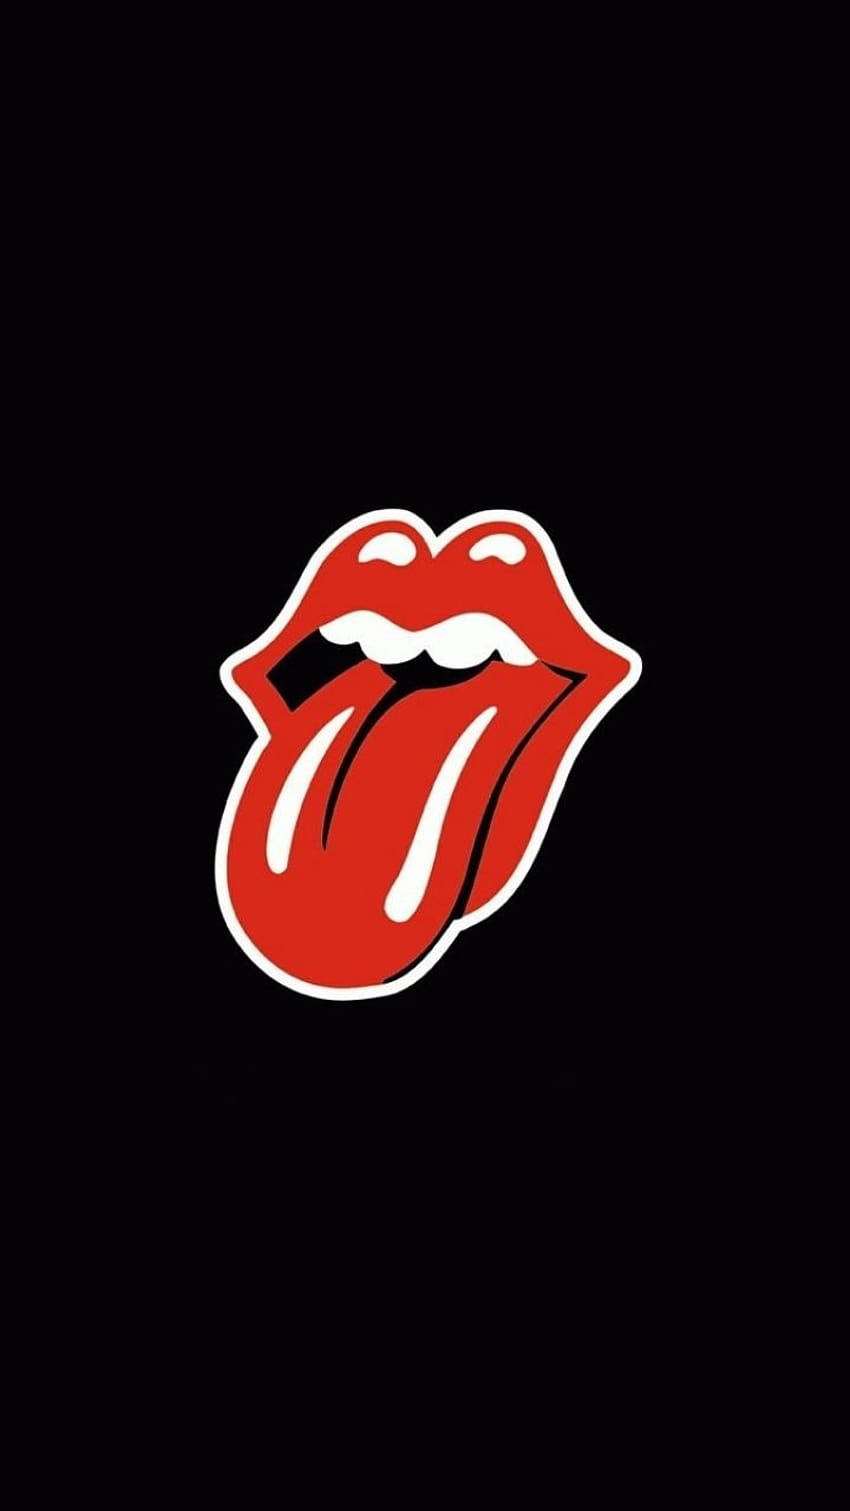 iPhone Rolling Stones, logo batu bergulir wallpaper ponsel HD